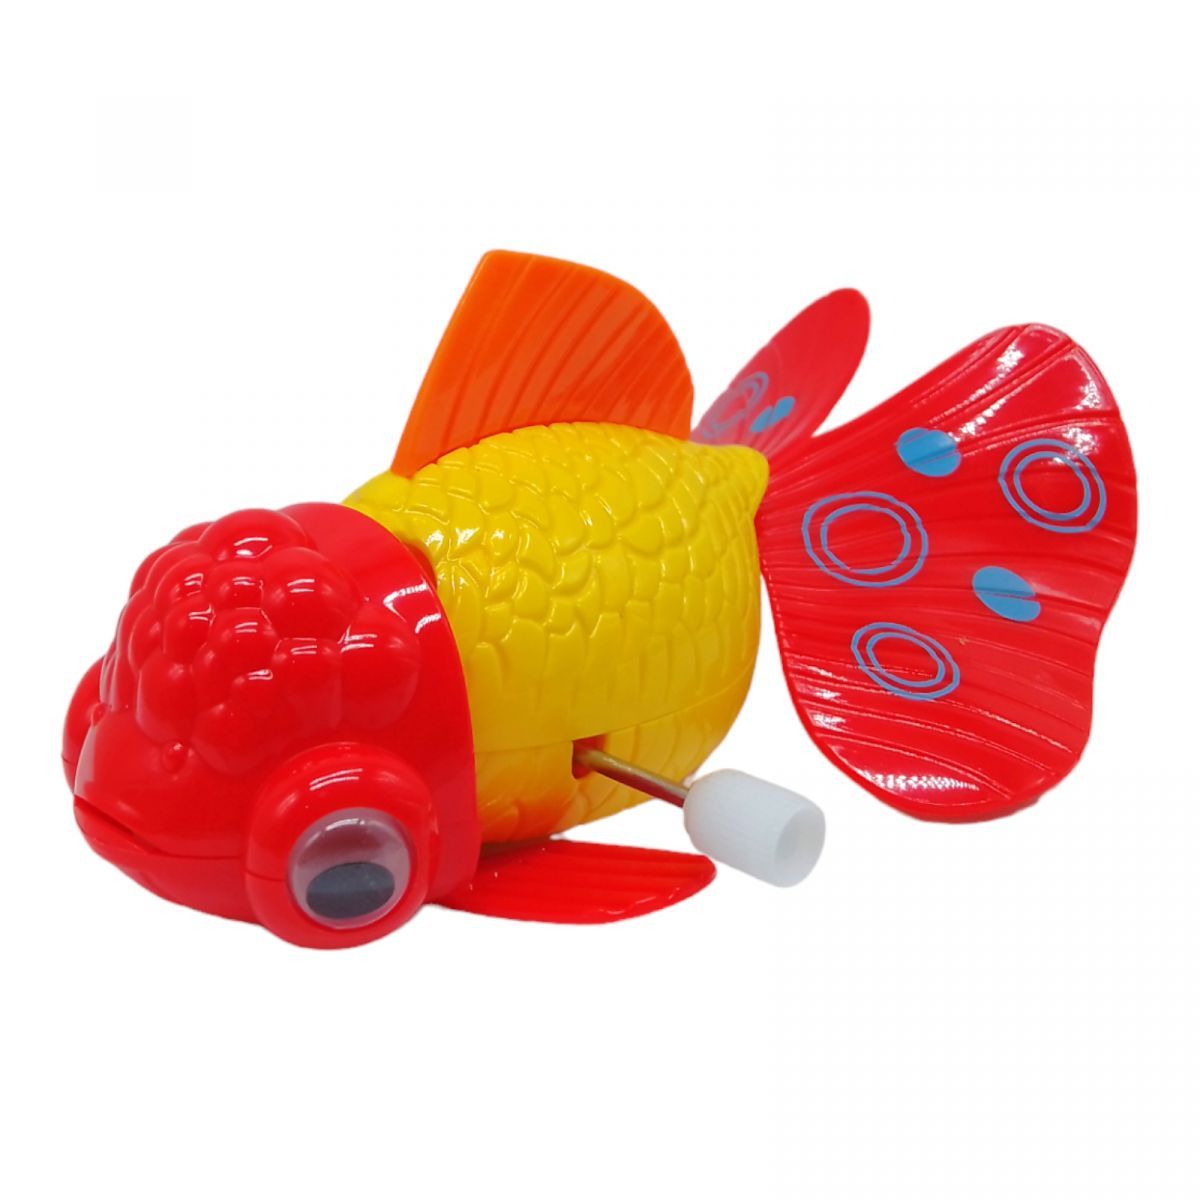 Уценка.  Заводная игрушка "Золотая рыбка" (желтая) - нет верхнего плавника